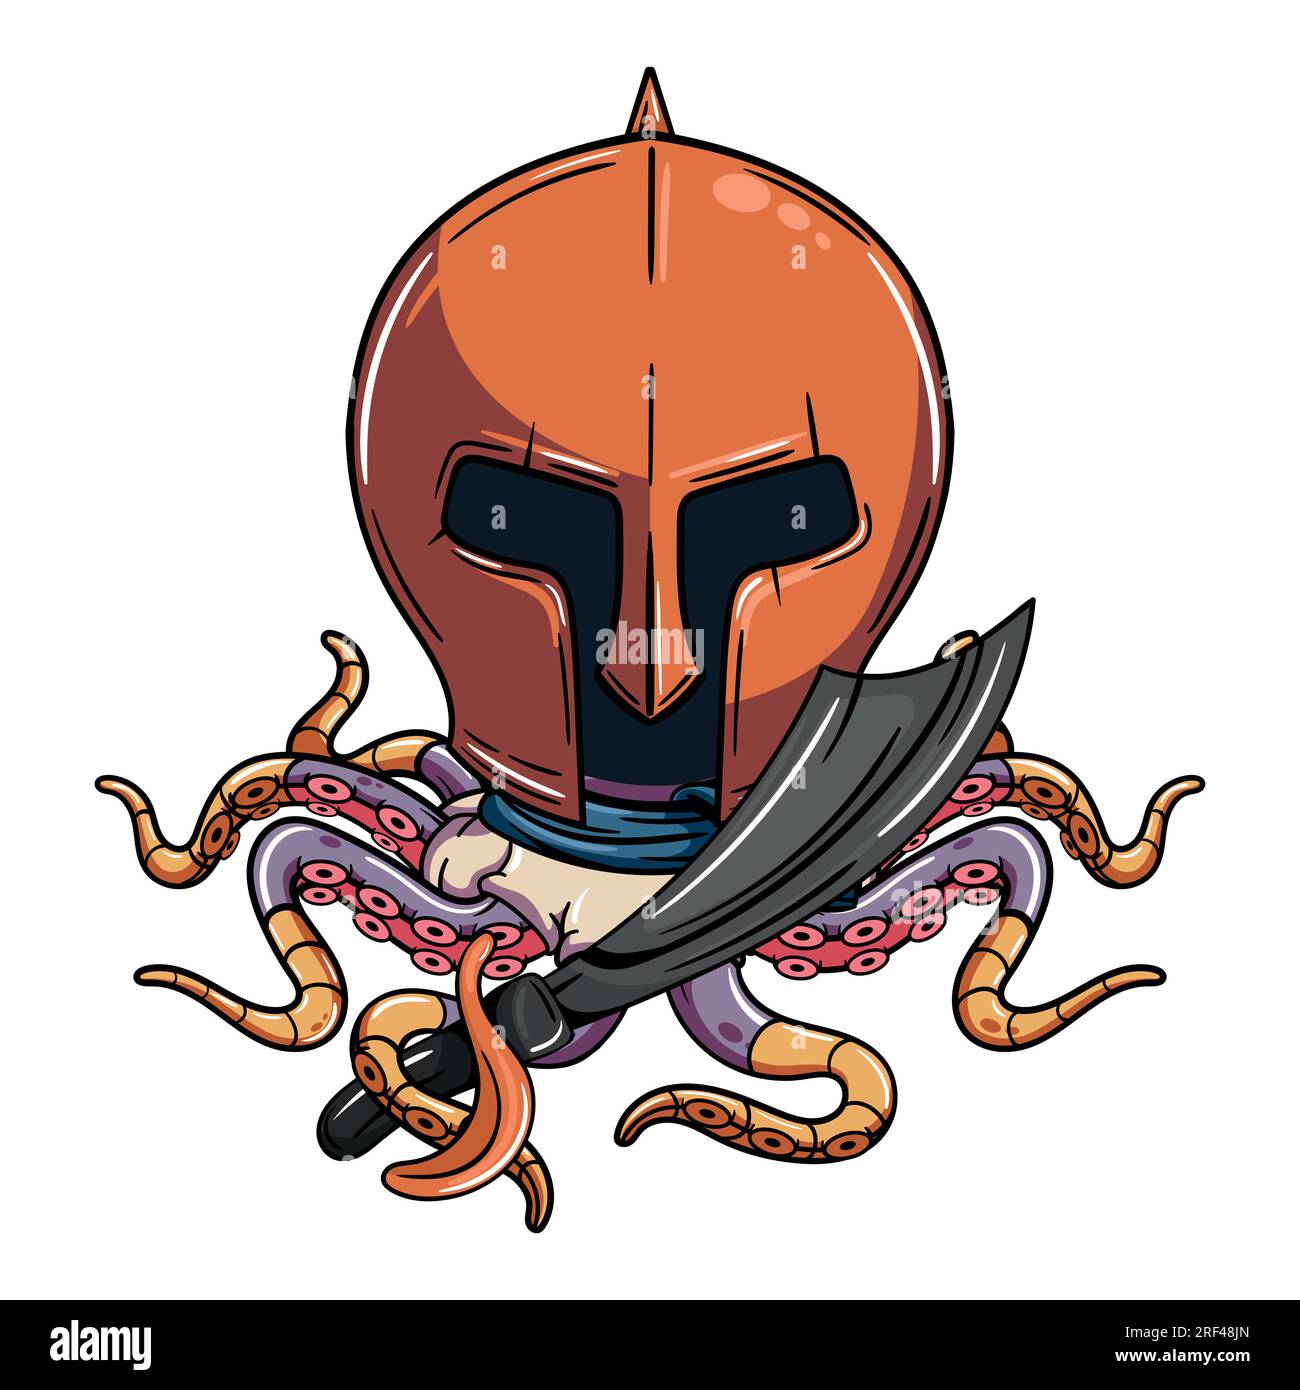 Personnage de poulpe cyborg de dessin animé avec casque de gladiateur médiéval et épée de pirate. Illustration pour la fantaisie, la science-fiction et la bande dessinée d'aventure Illustration de Vecteur